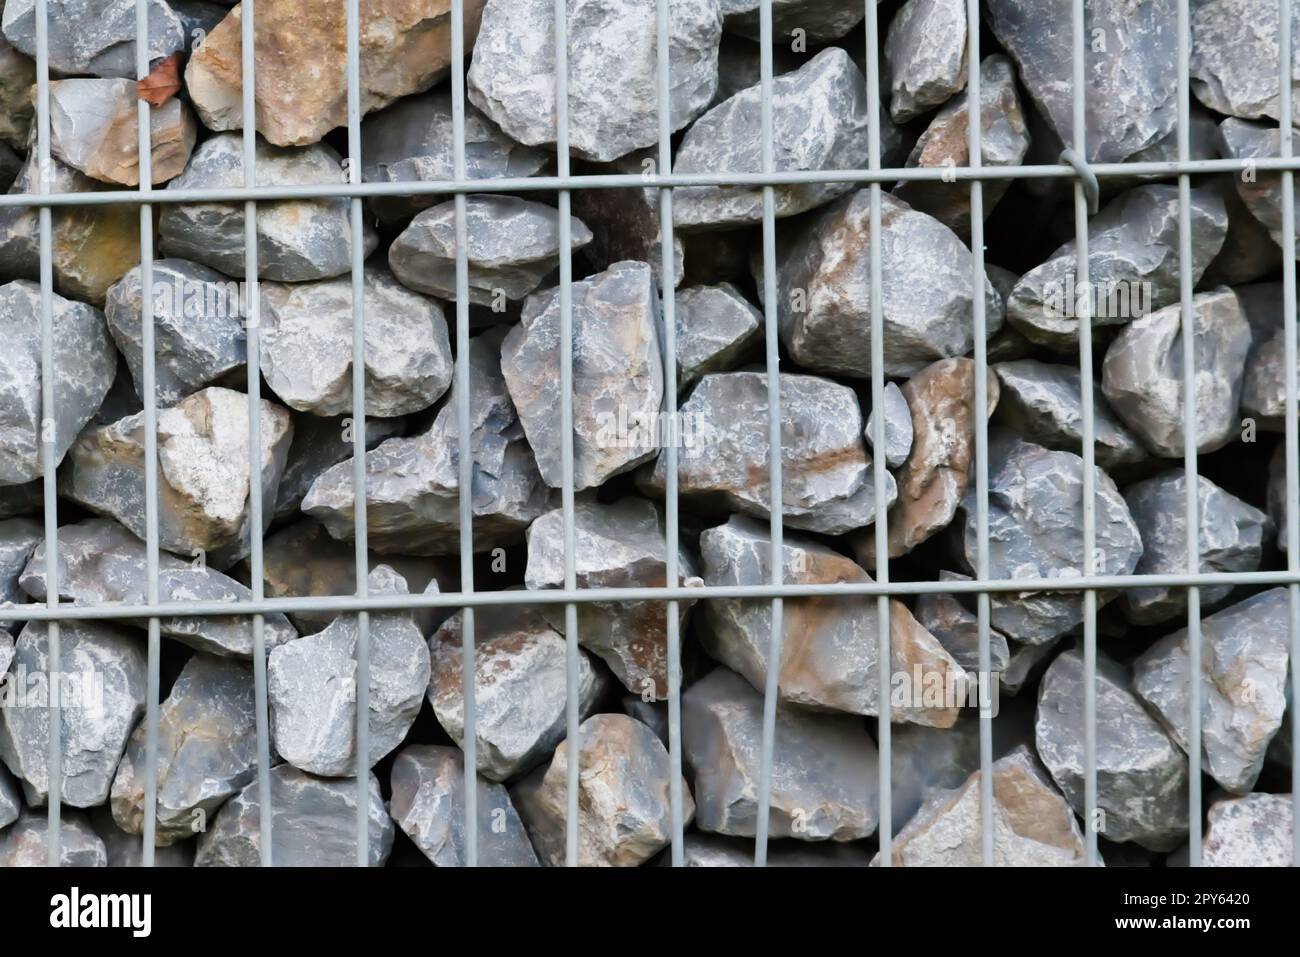 Rohe Felsen und graue Steinwände als Natursteinhintergrund mit zerkleinertem und rauem Material, das in Metallgitter gestapelt ist, als massiver Rand in grauen Farben als natürlicher mineralischer Hintergrund für Gärten Stockfoto